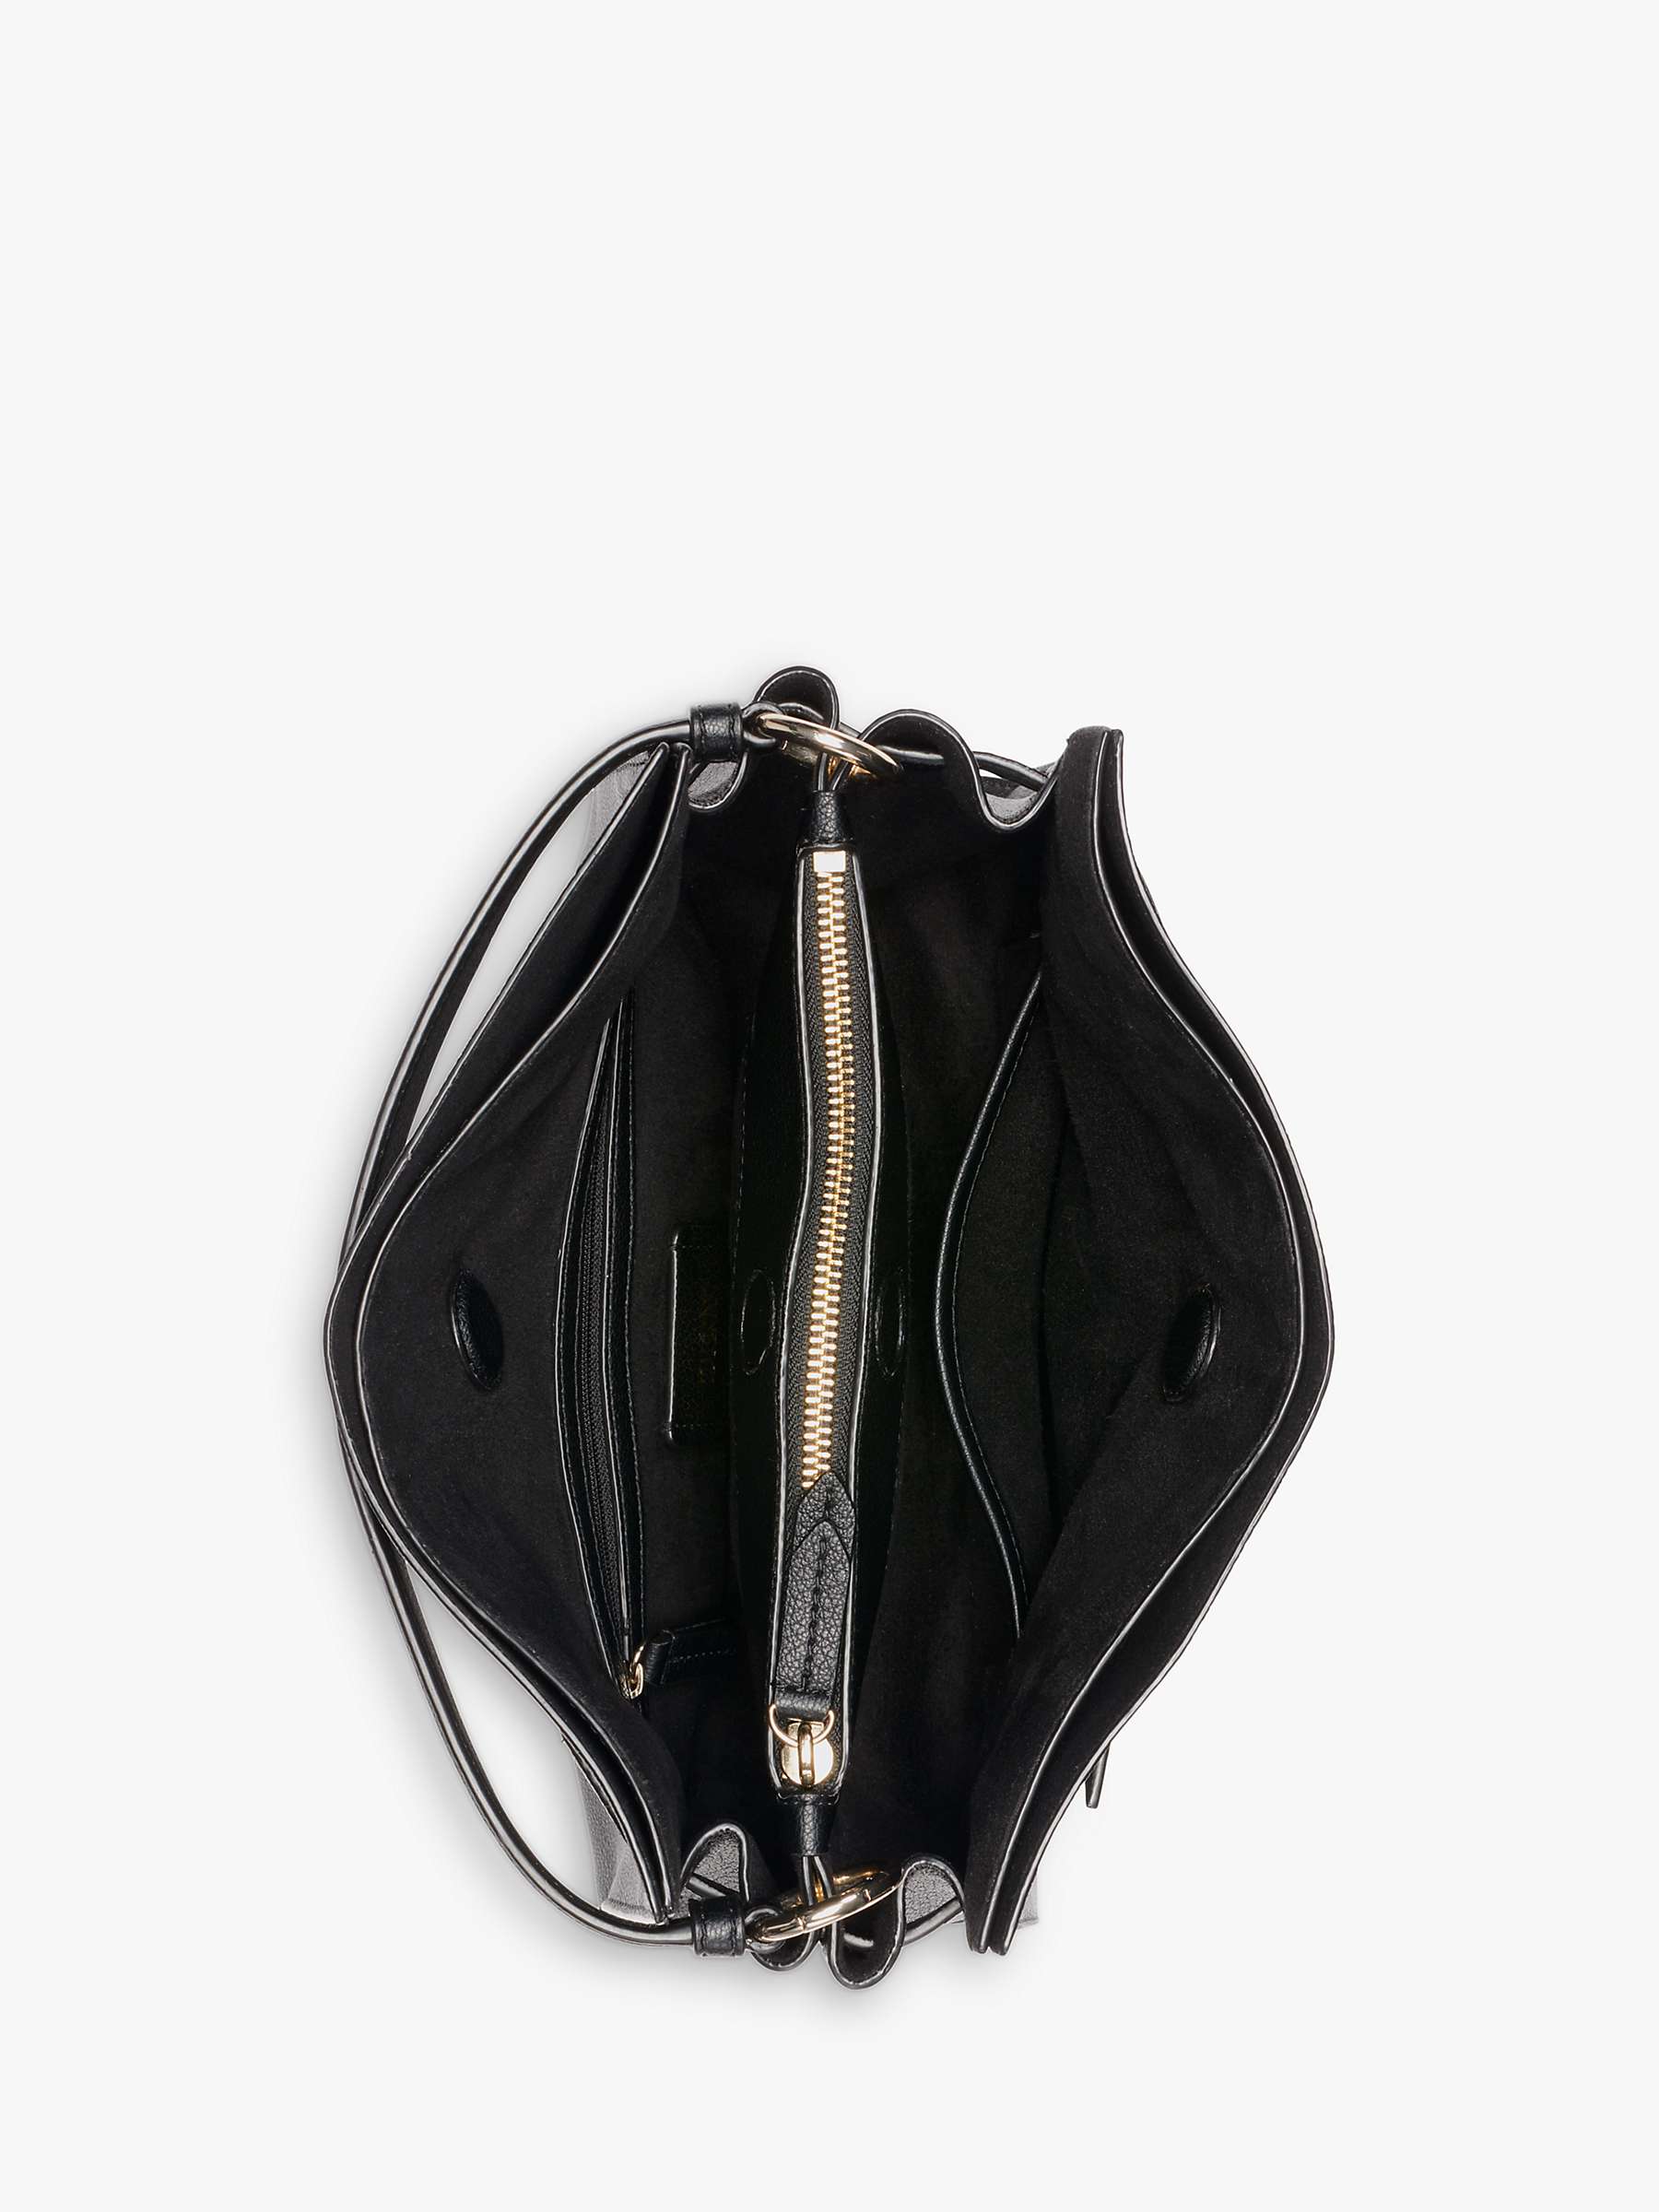 Buy DKNY Bushwick Leather Shoulder Bag Online at johnlewis.com